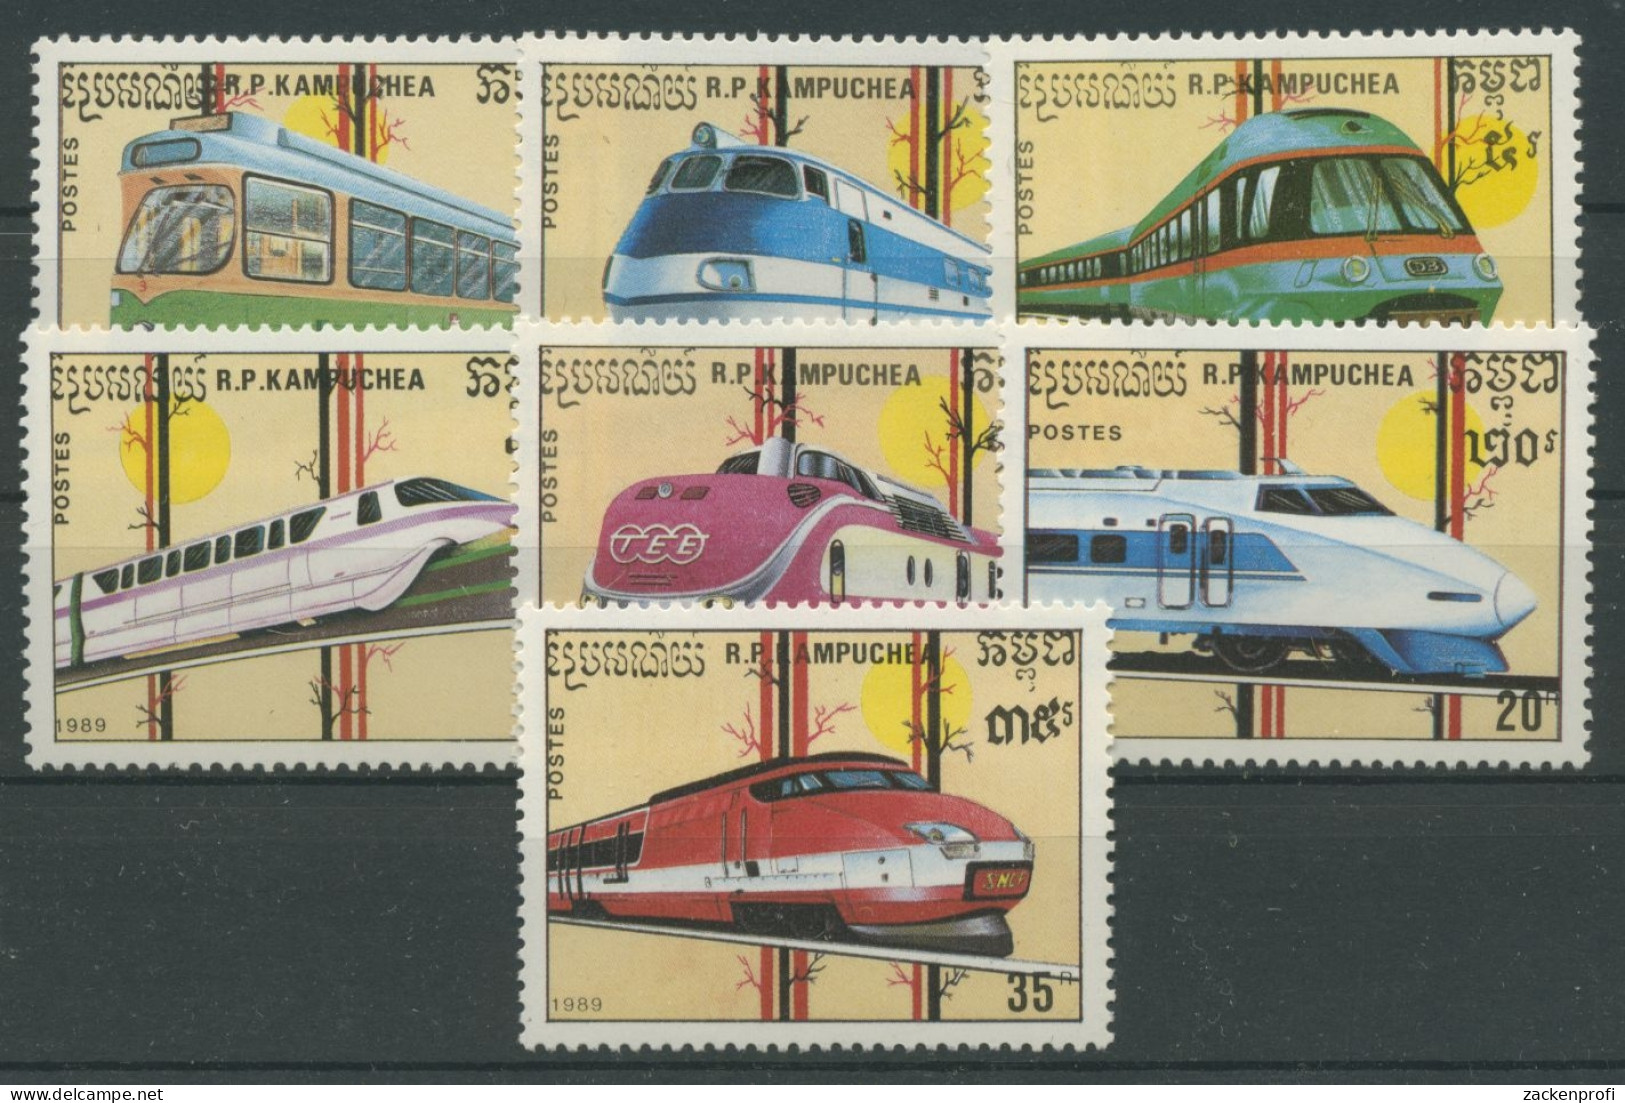 Kambodscha 1988 Eisenbahn Schienenfahrzeuge 1007/13 Postfrisch - Kambodscha